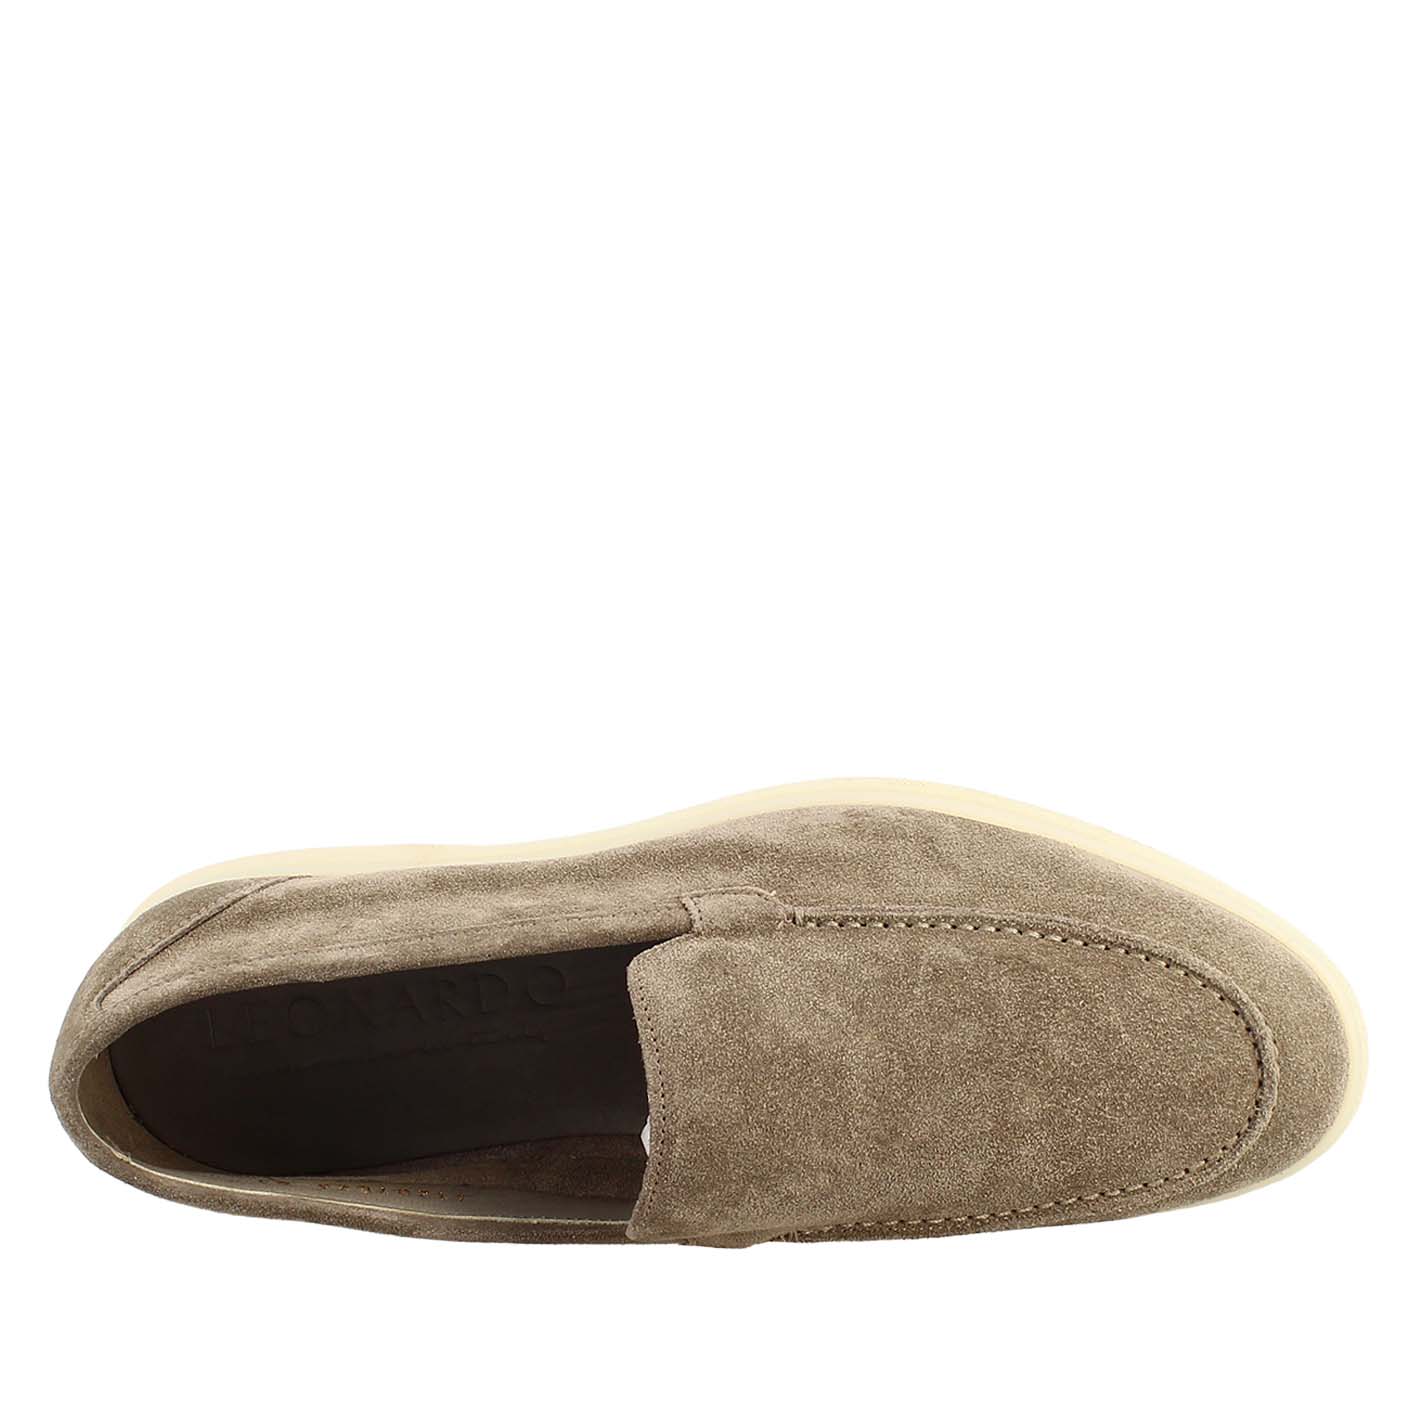 Elegant gray unlined loafer for men in suede